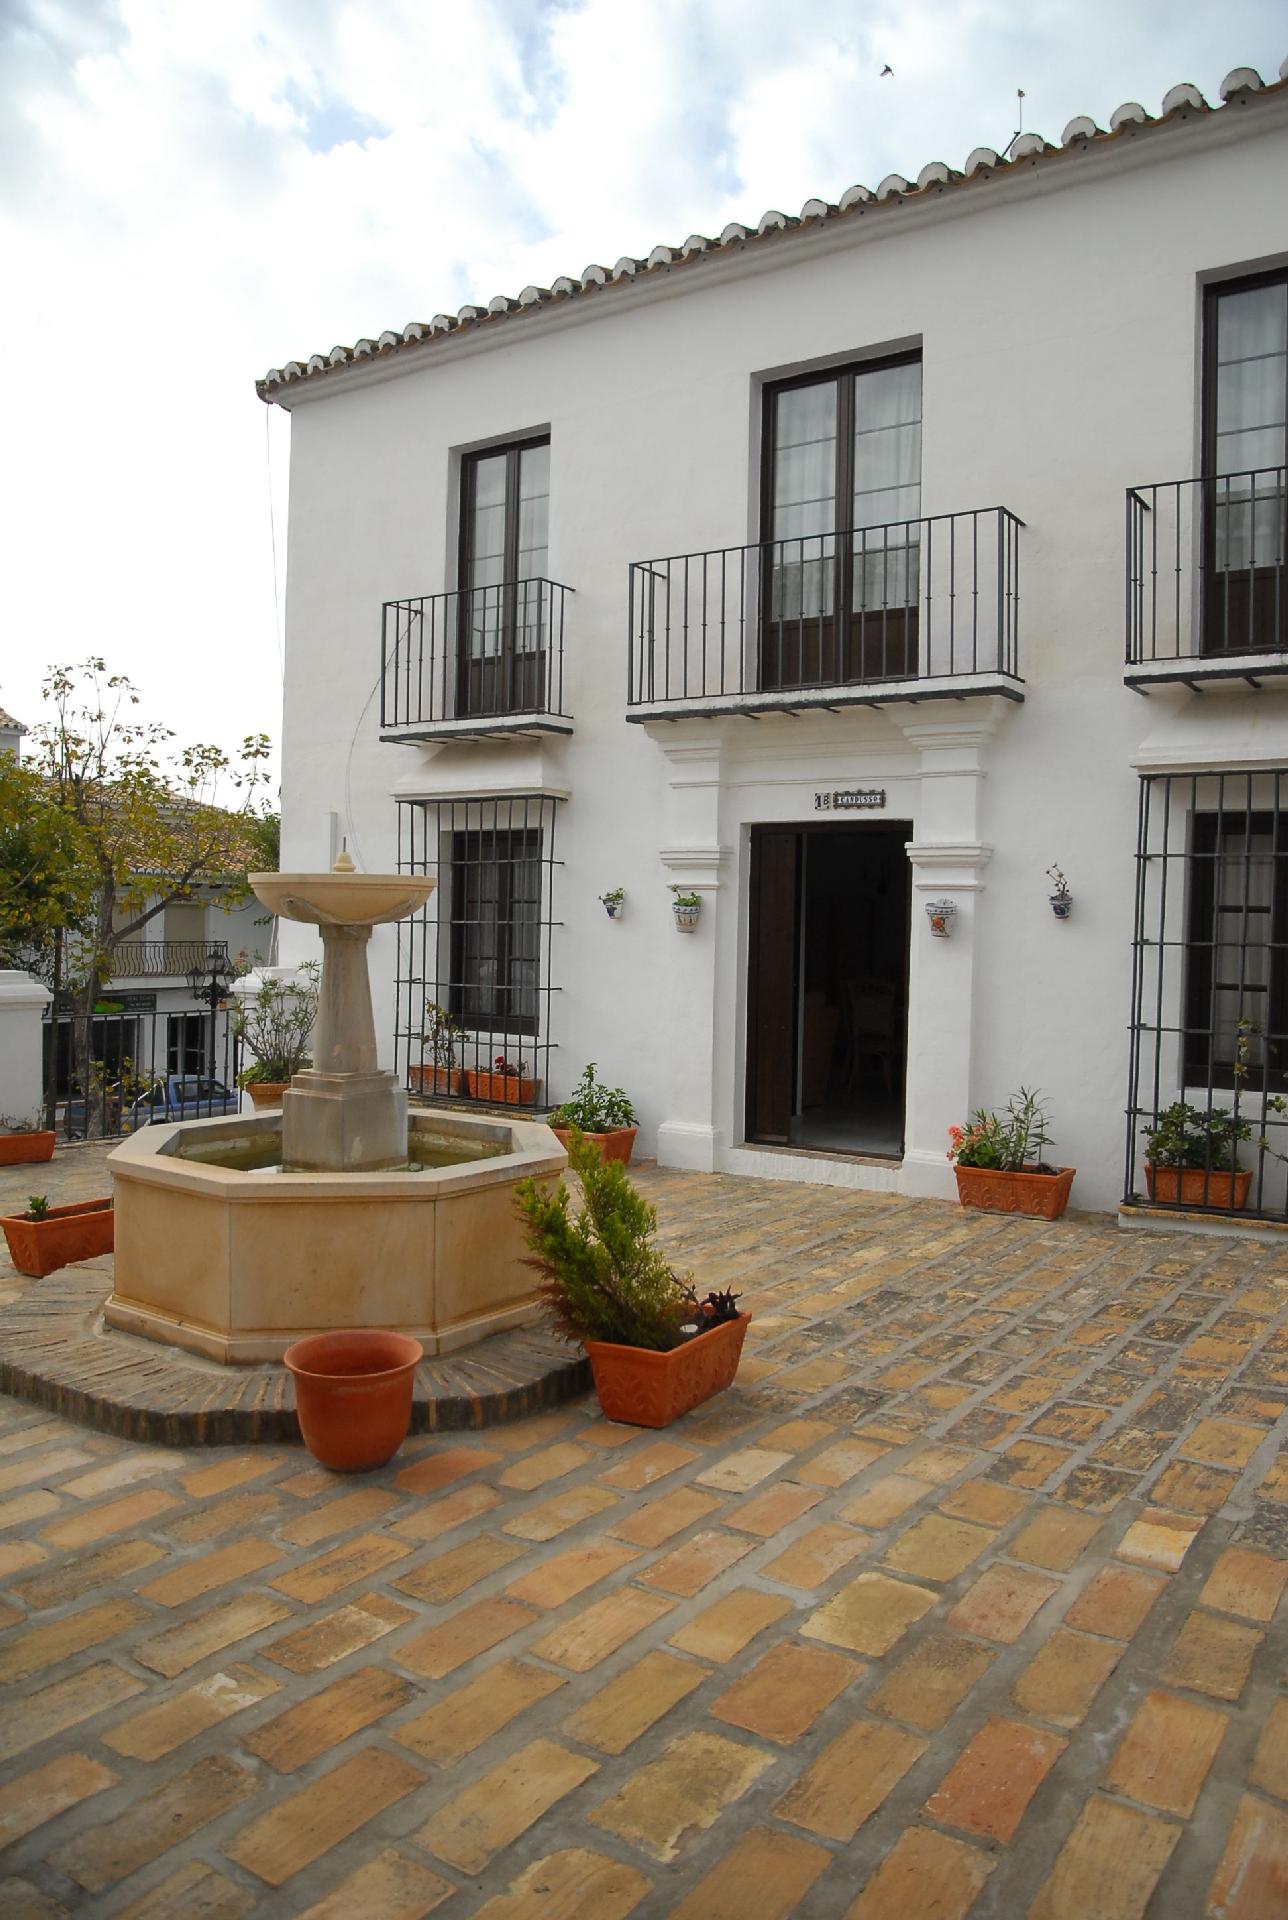 Ferienwohnung für 2 Personen ca. 54 m² i Ferienhaus in Spanien